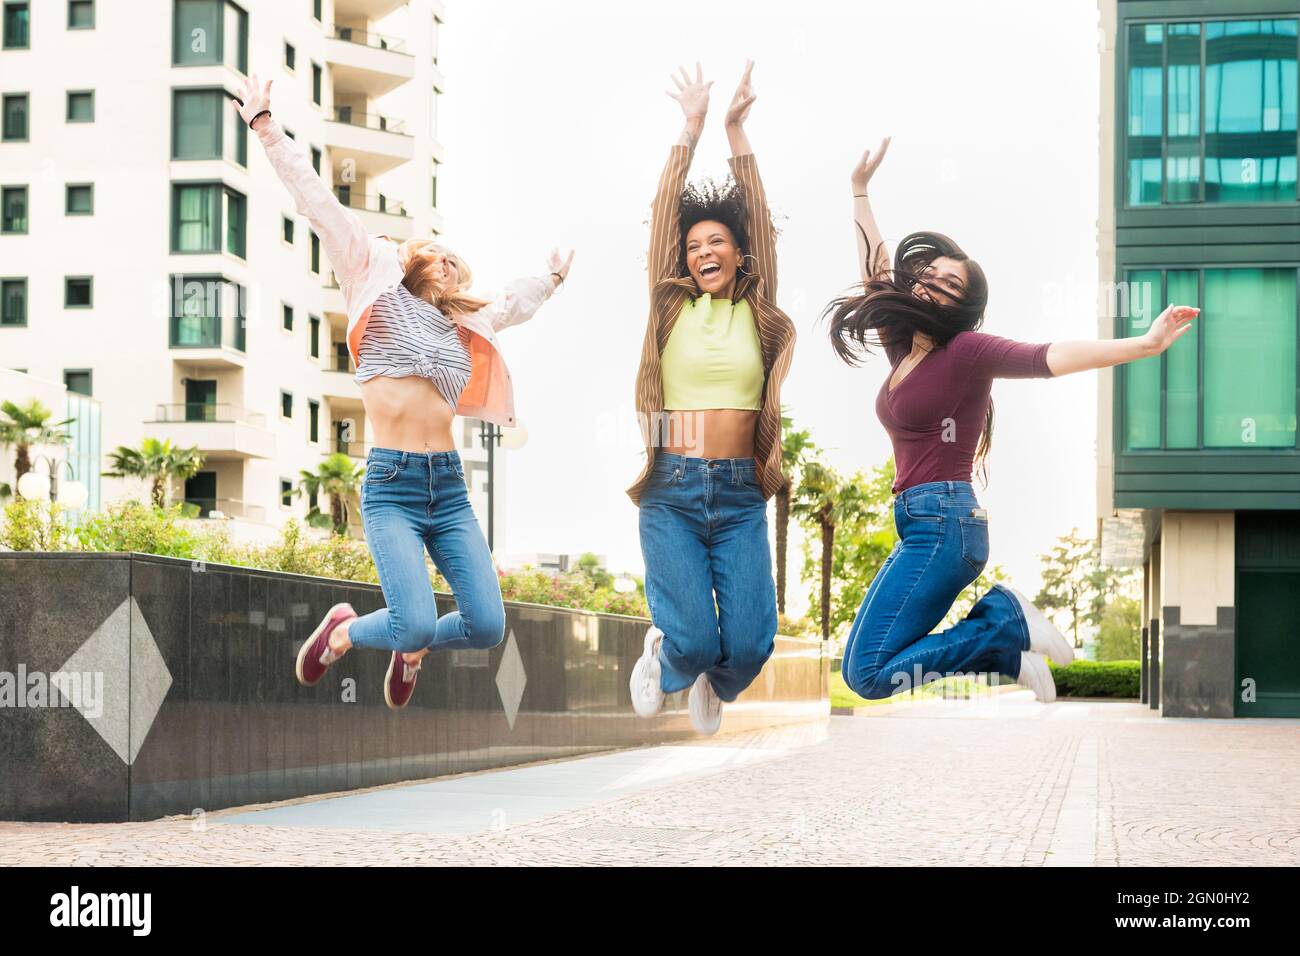 Tre esuberante giovane donna felice che festeggia saltando in aria insieme ridendo e rallegrandosi in una strada della città Foto Stock